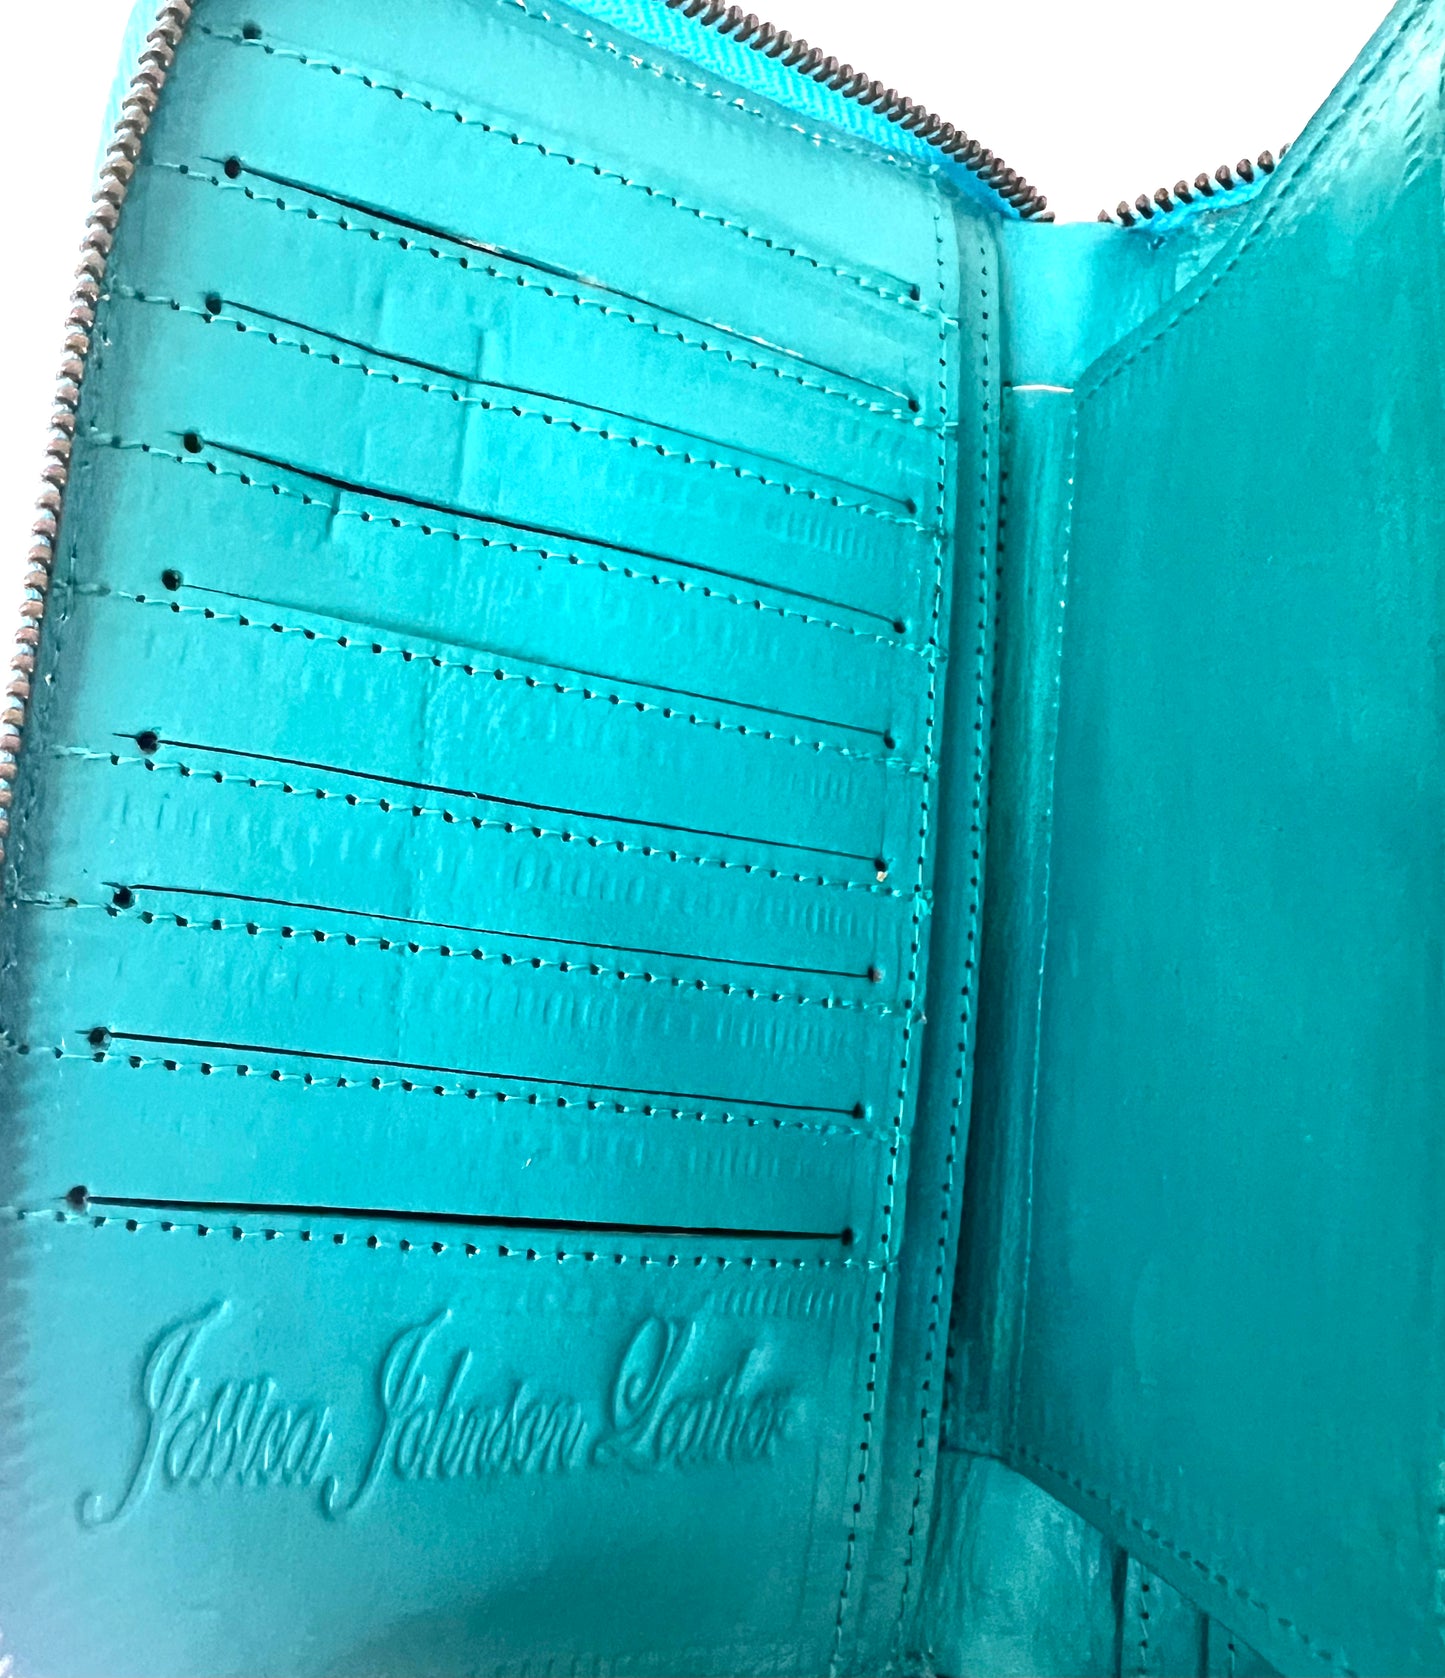 Atlantis leather wallet in nightshade colour way